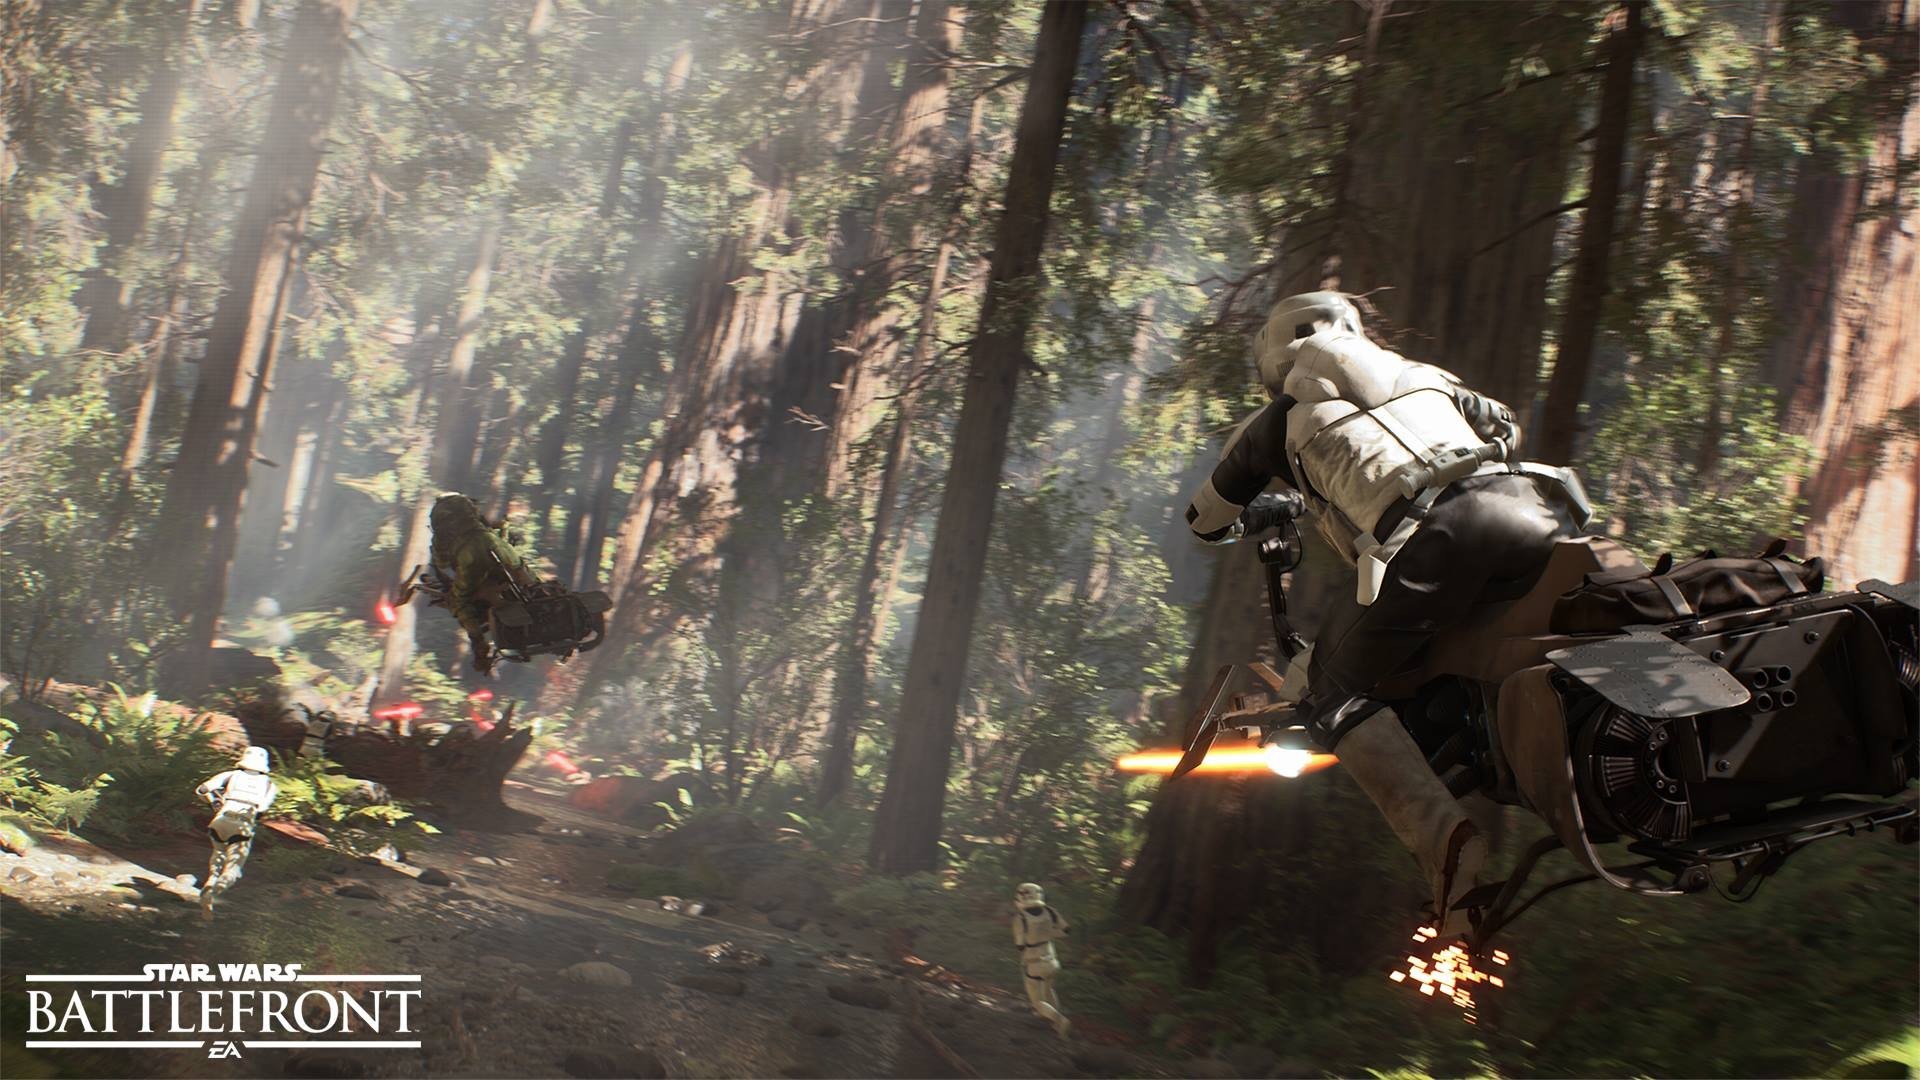 Star Wars Battlefront  Endor Forest Ambience 4K 60fps  YouTube